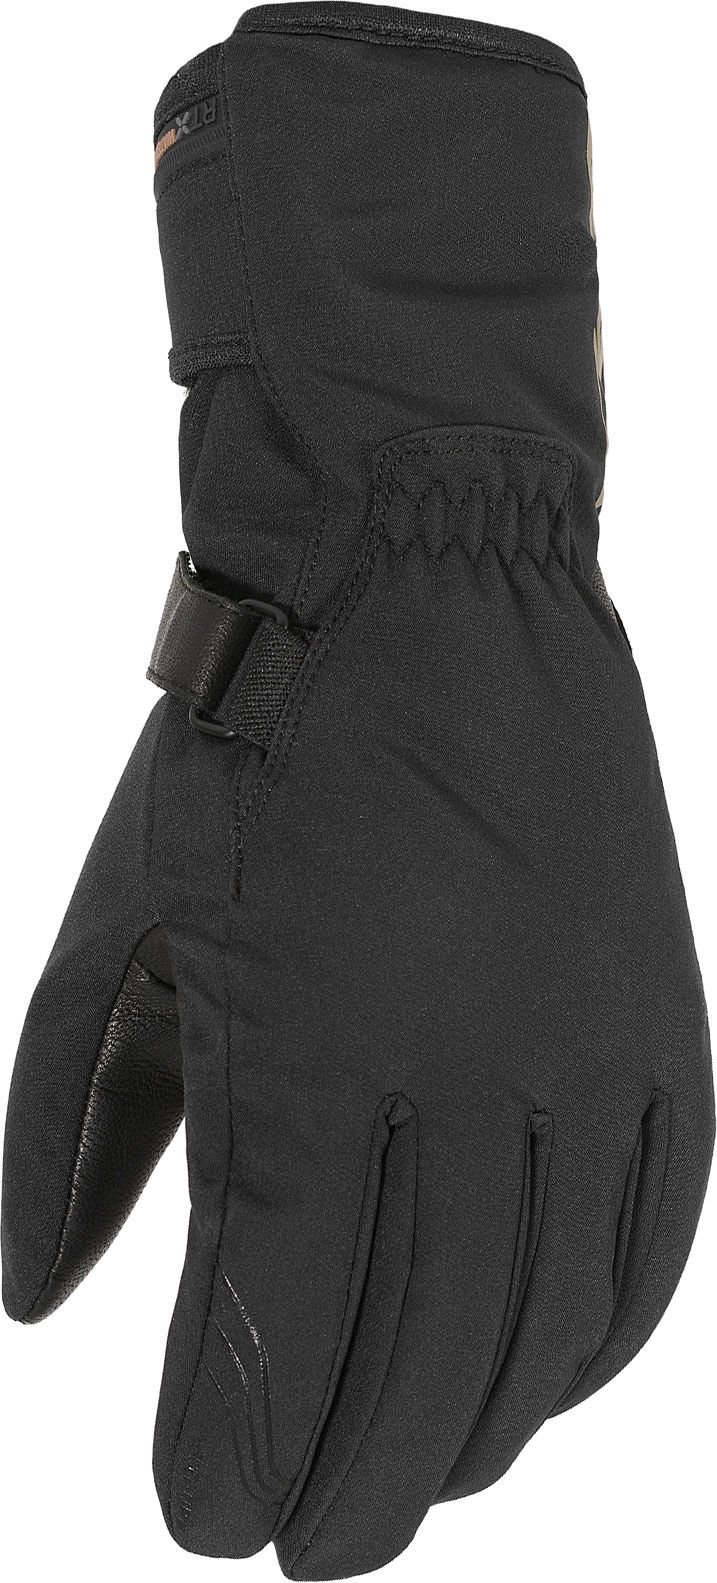 Macna Tigo RTX Evo, gants imperméables pour femmes - Noir - XL